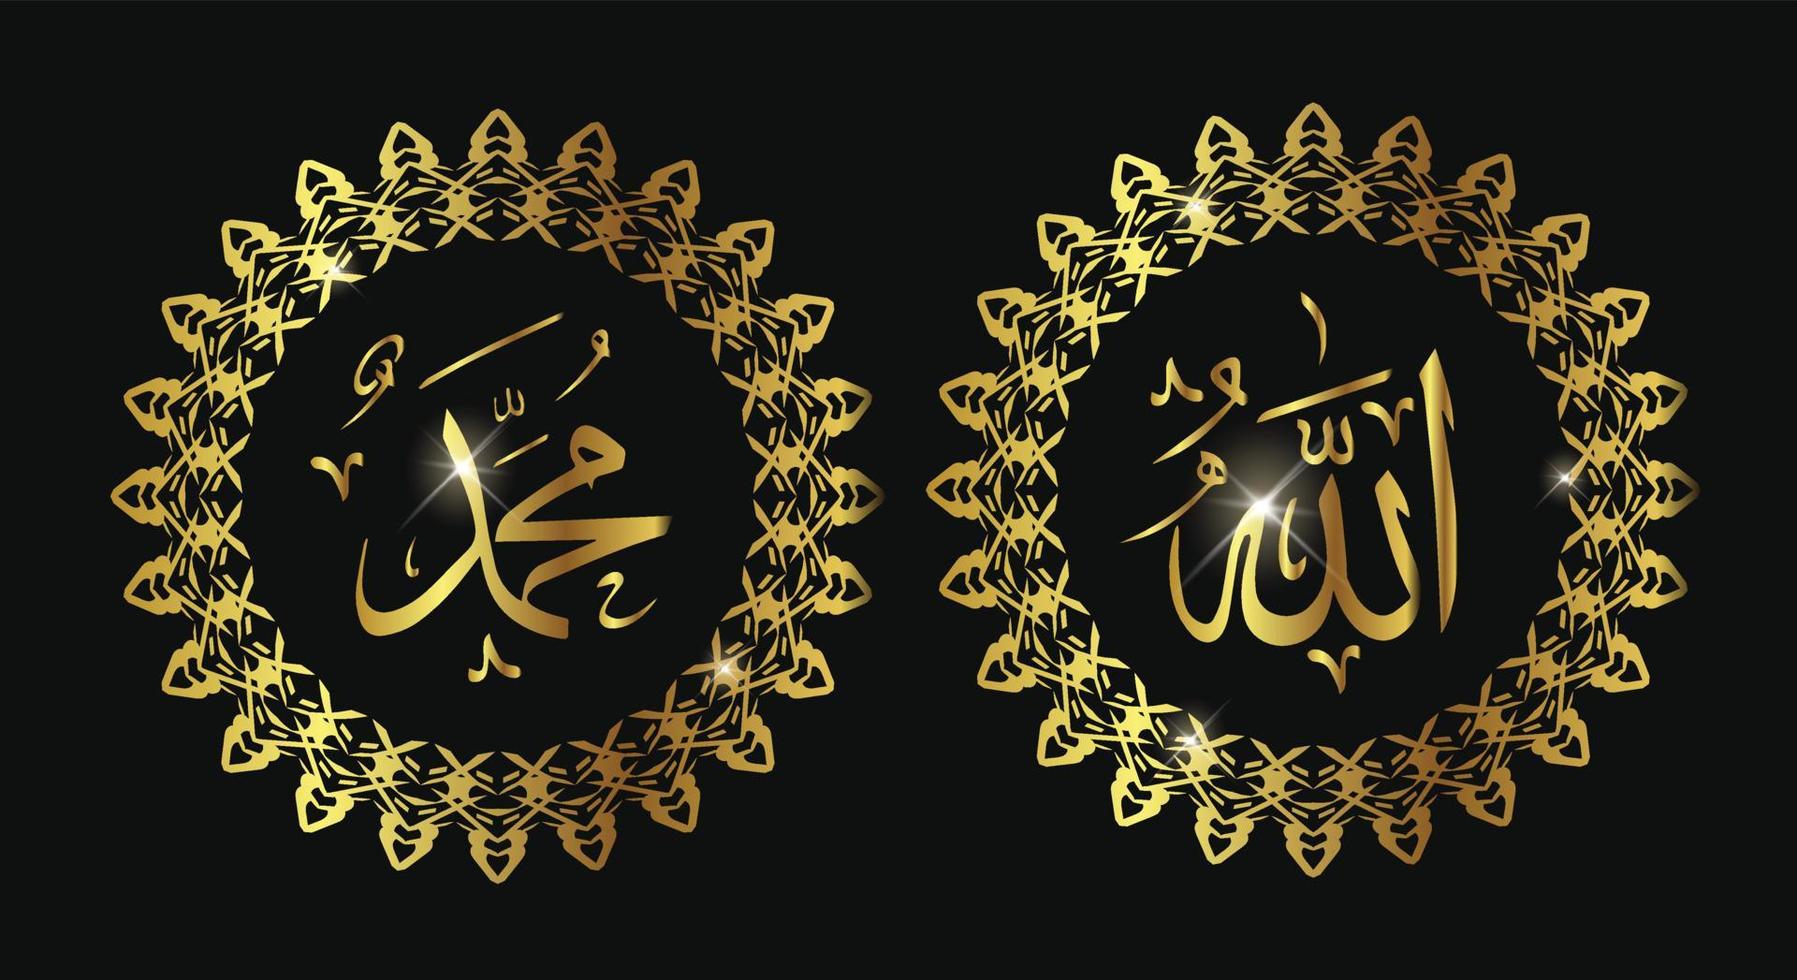 allah muhammad nombre de allah muhammad, arte de caligrafía islámica árabe de allah muhammad, aislado en un fondo oscuro. vector